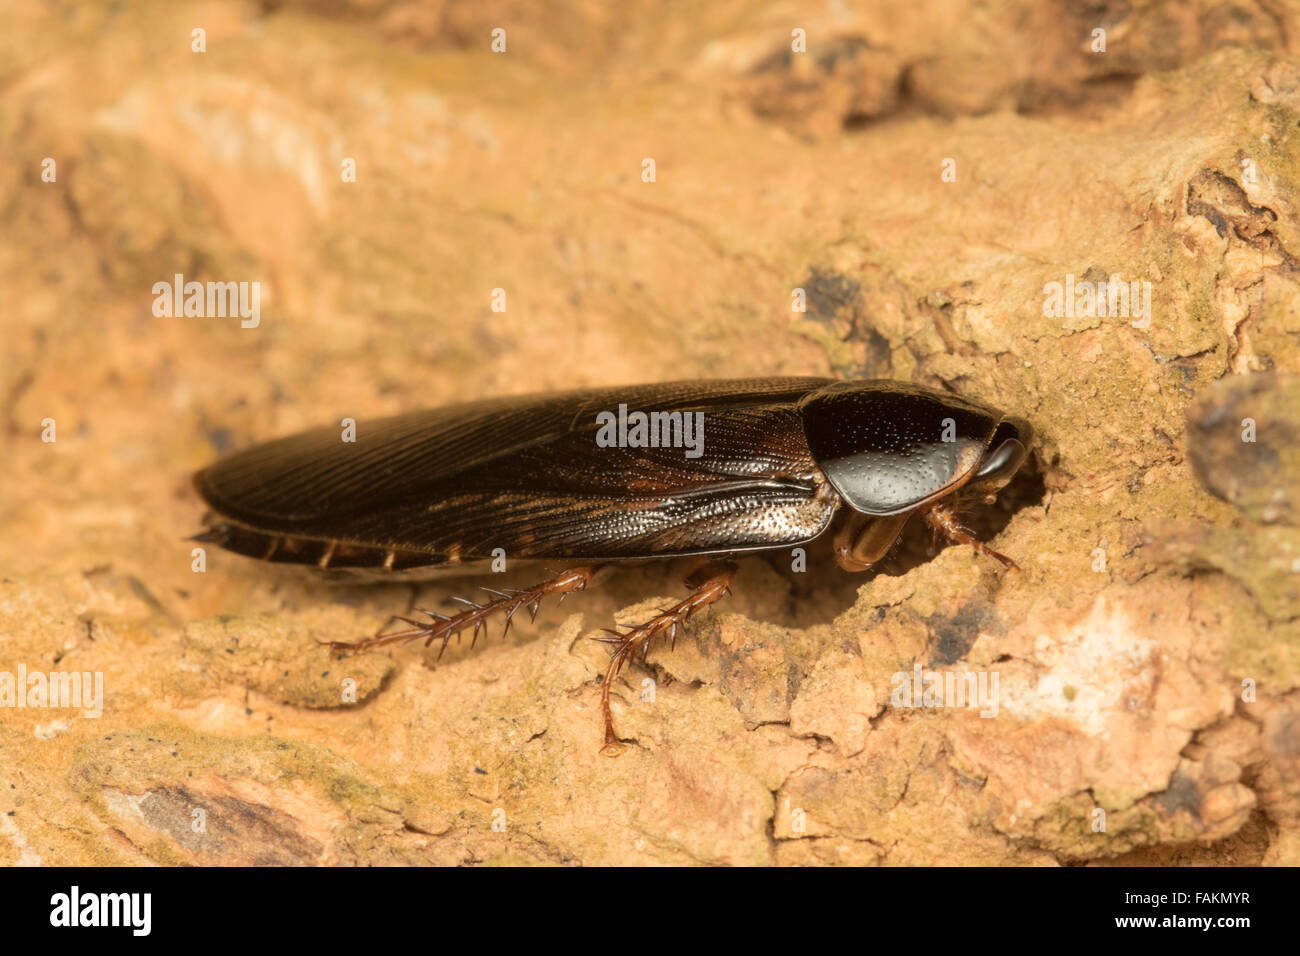 Blattodea scarafaggio. Blattodea è un ordine di insetti che attualmente unisce gli scarafaggi e le termiti. Foto Stock